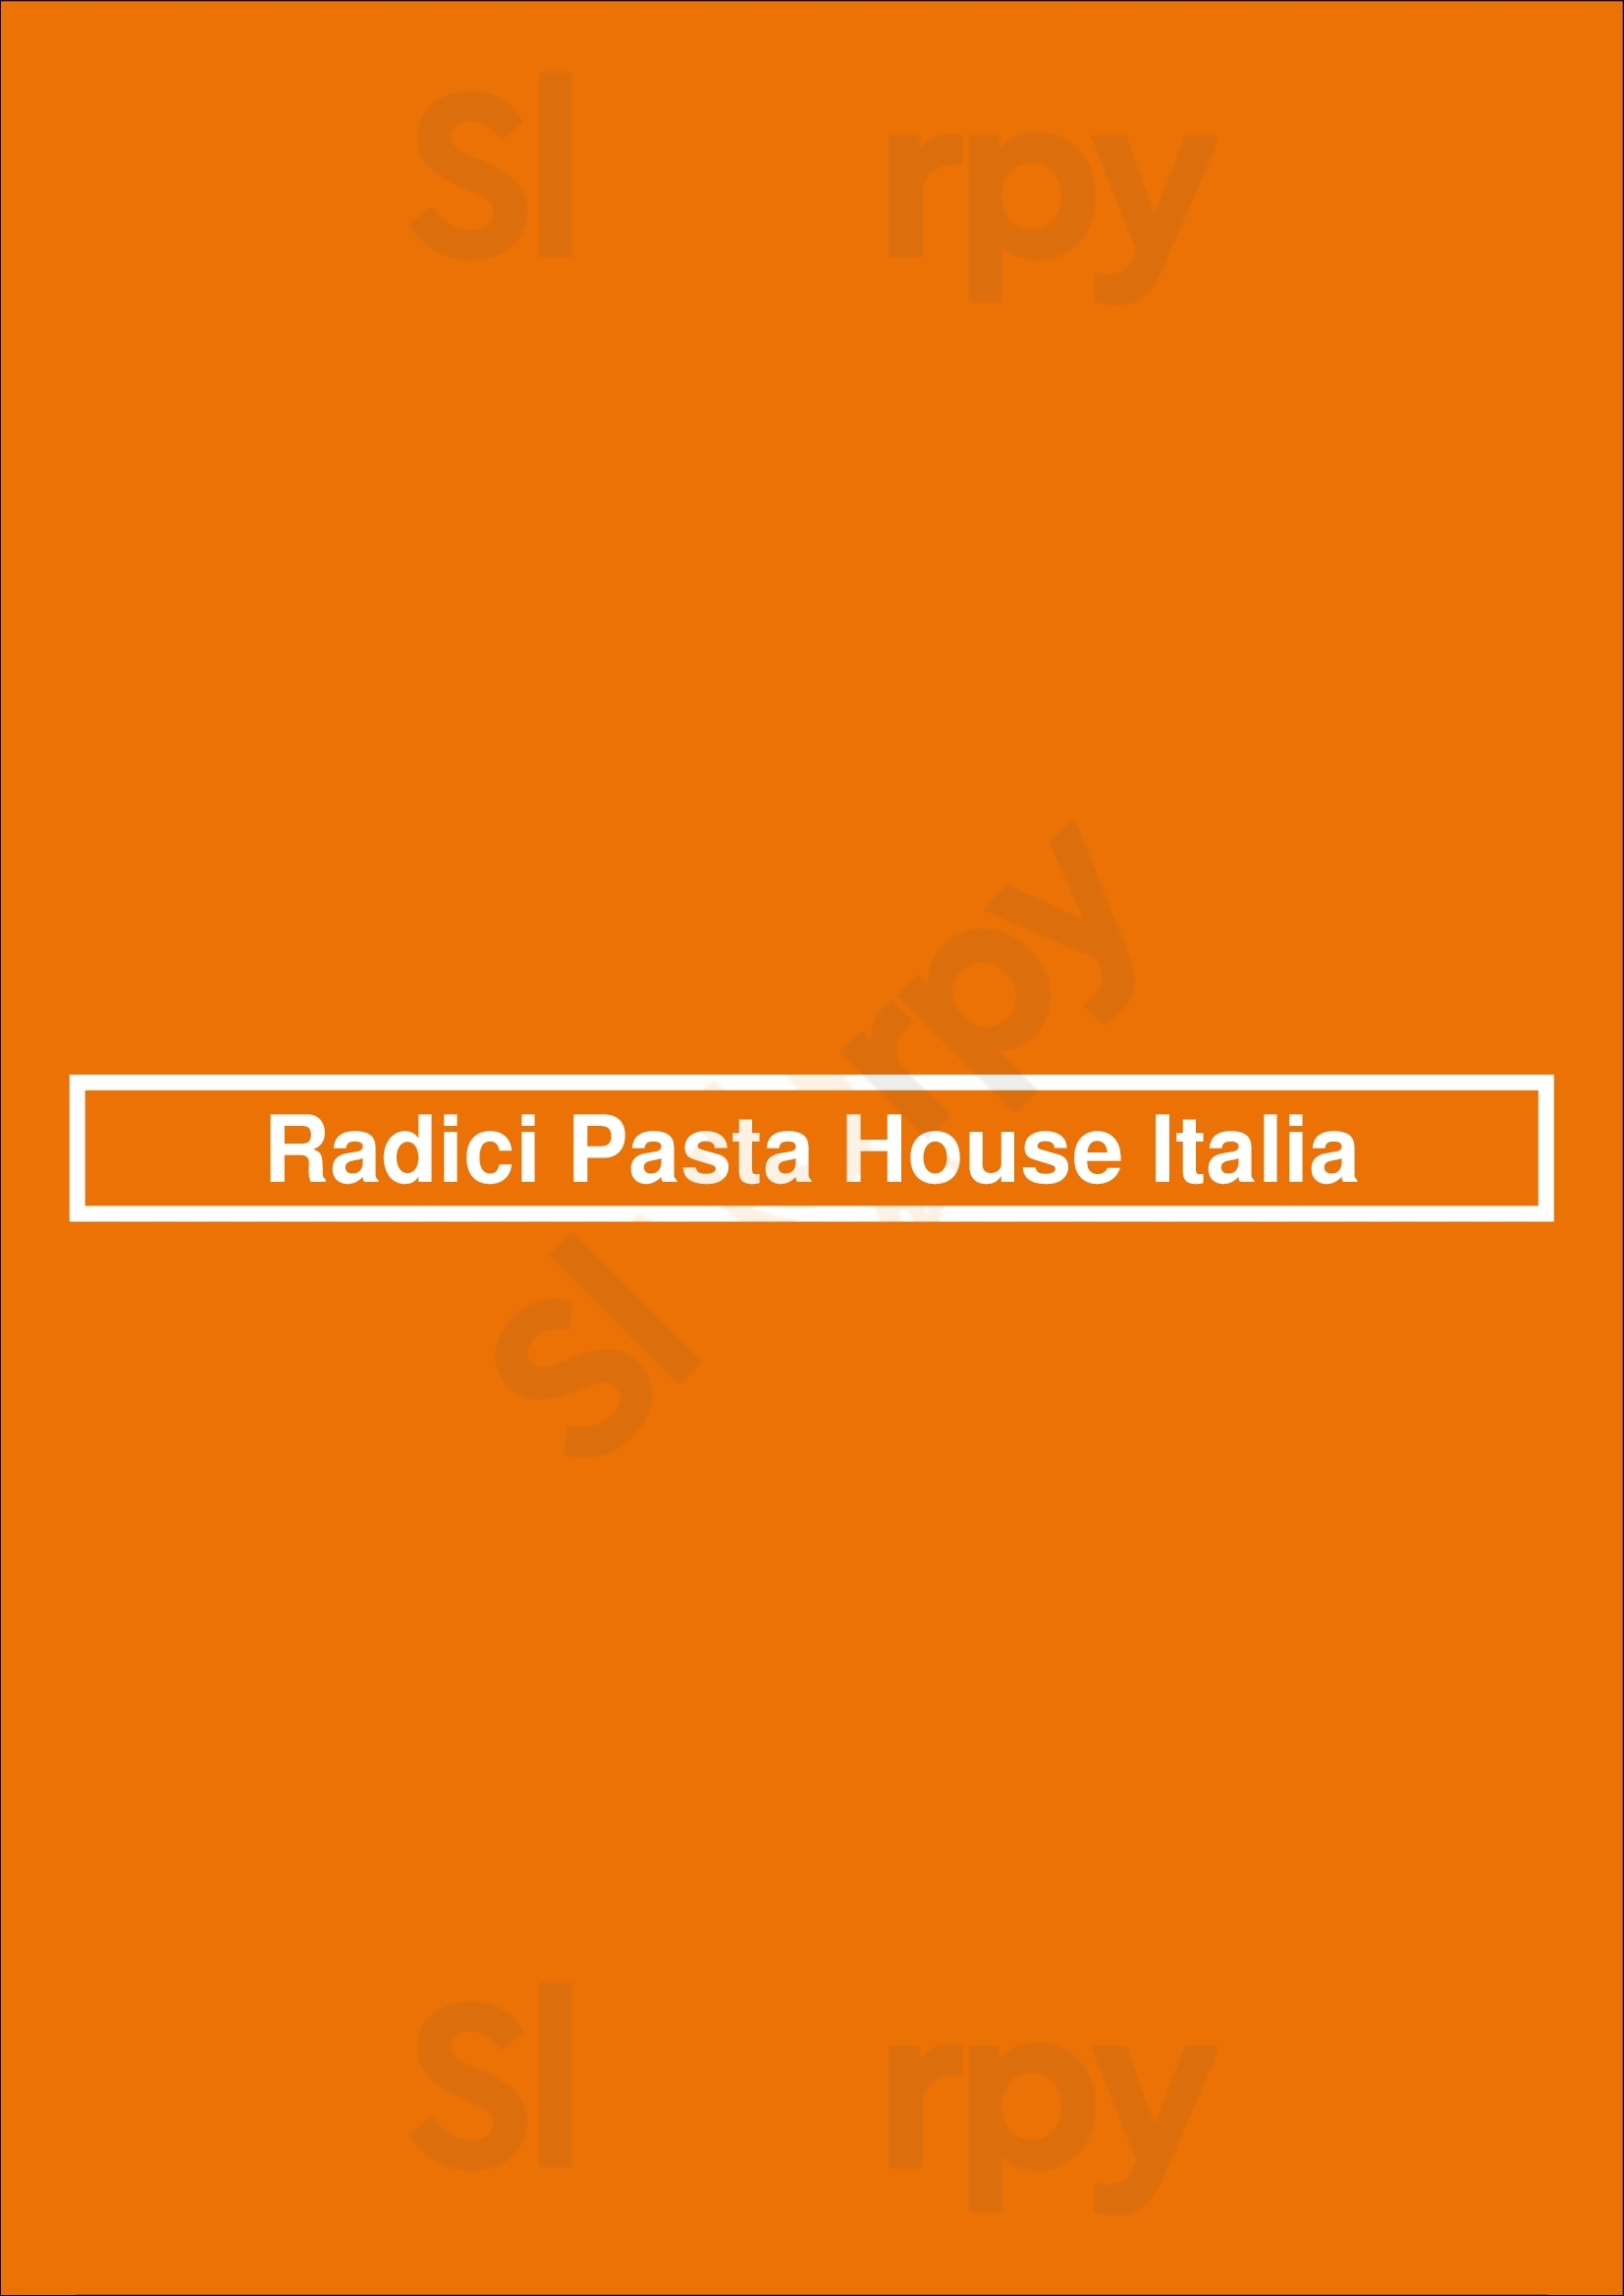 Radici Pasta House Italia Coolangatta Menu - 1